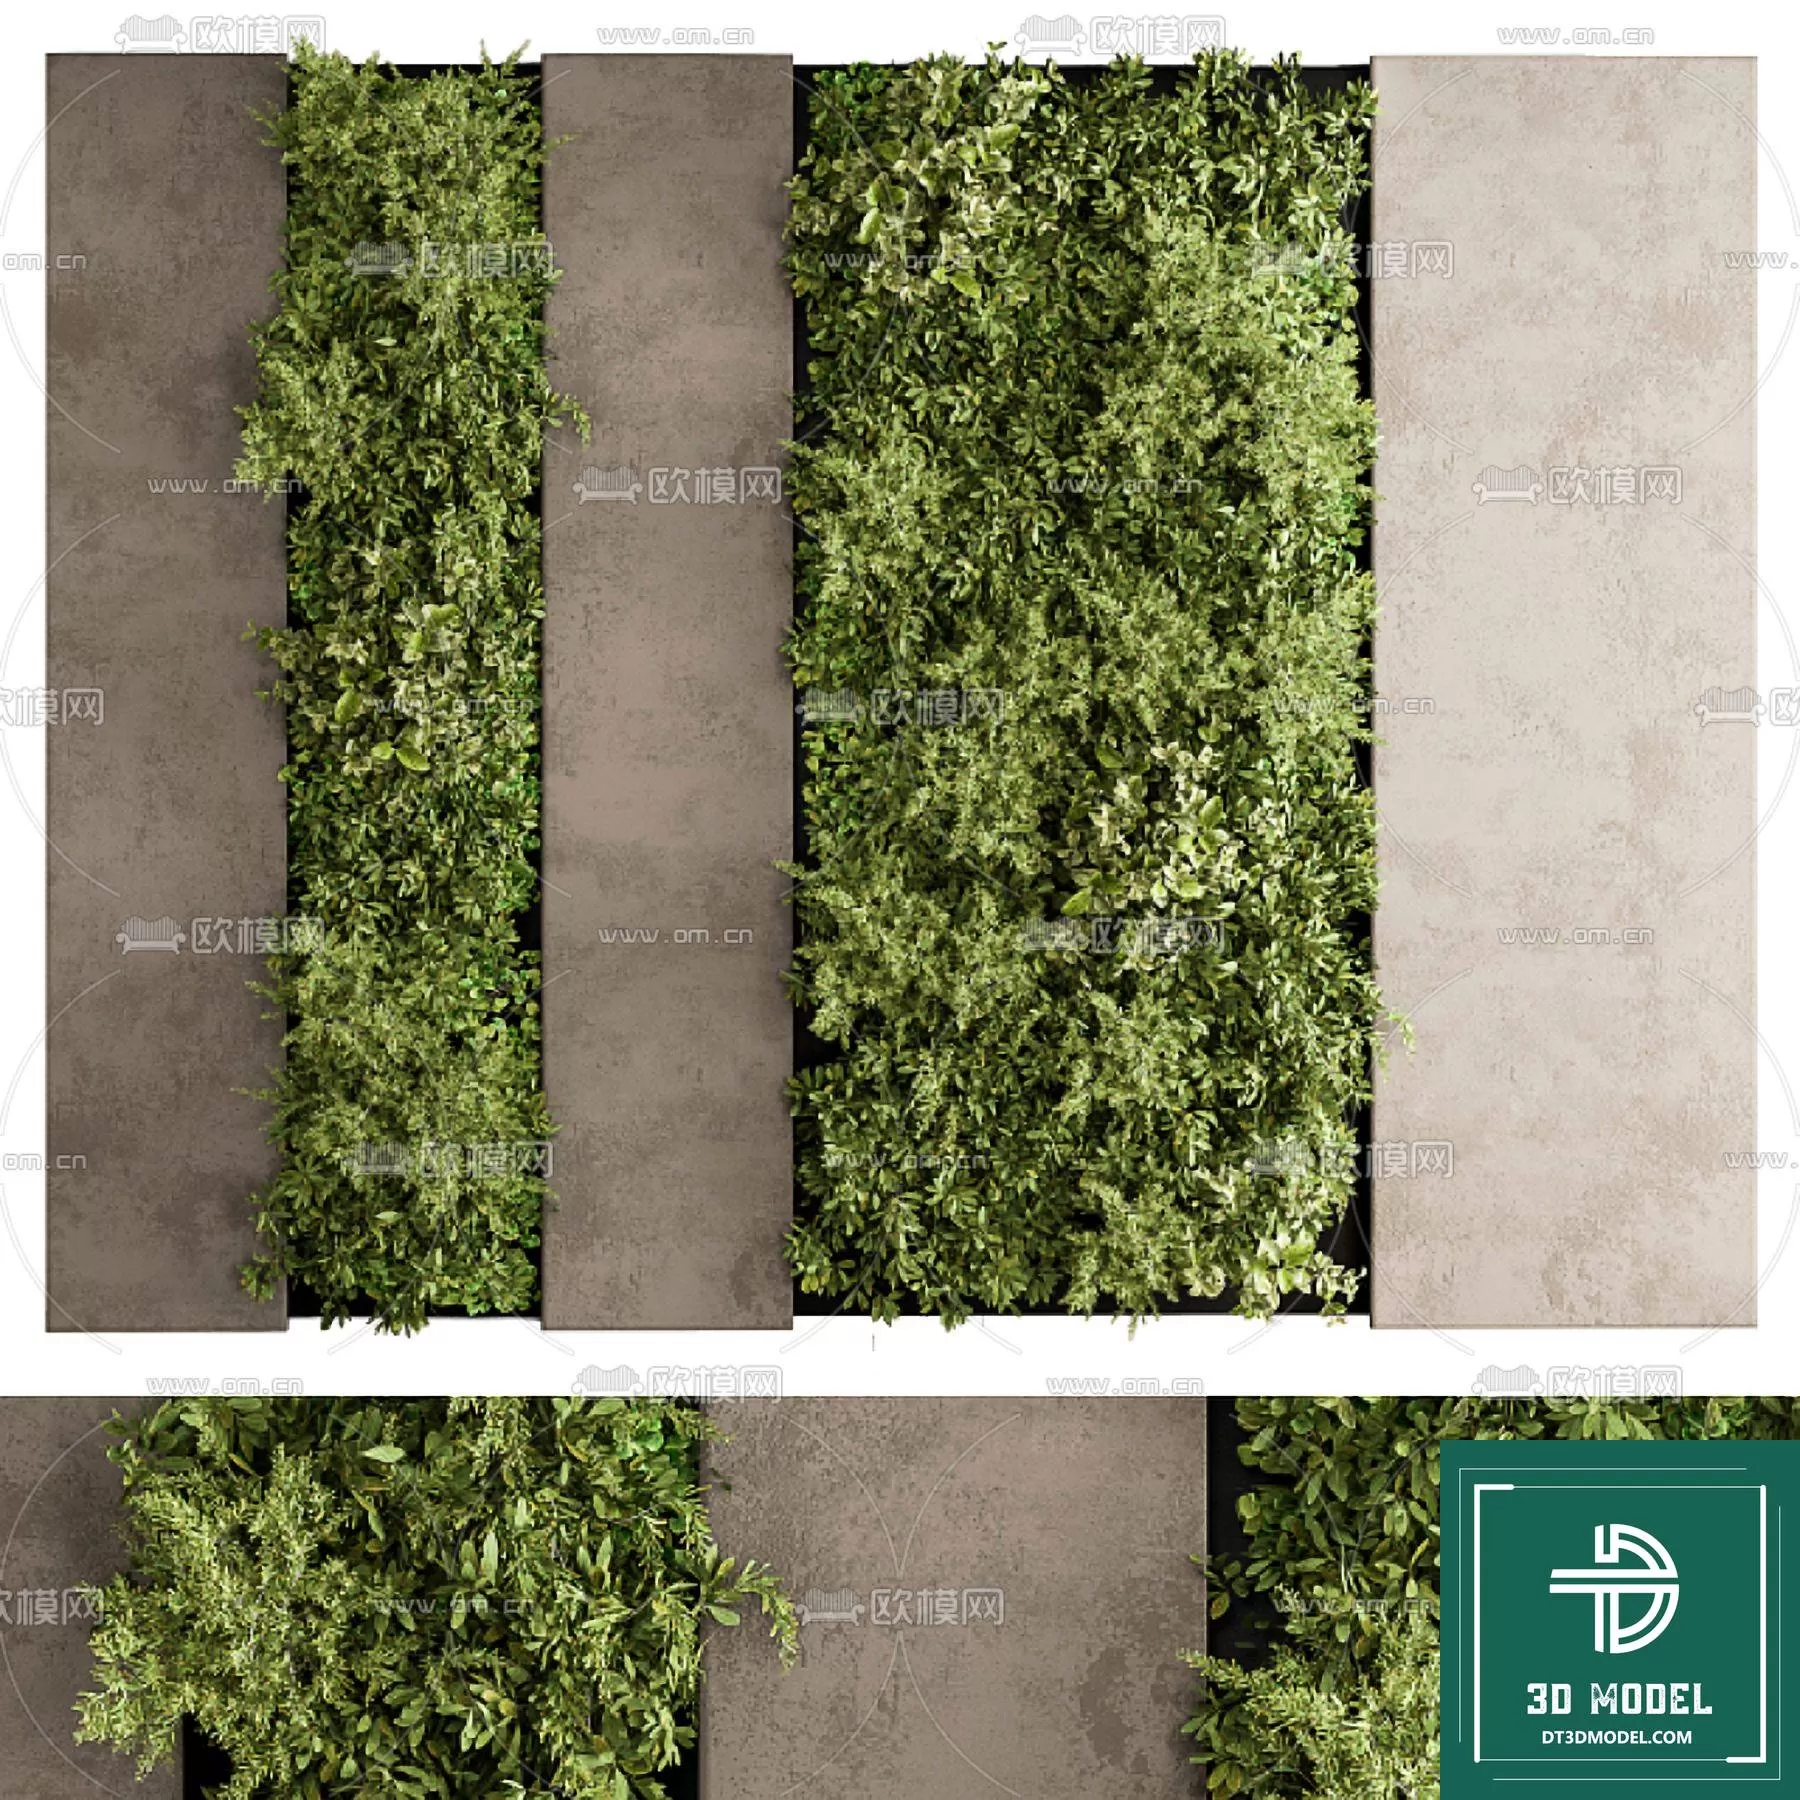 VERTICAL GARDEN – FITOWALL PLANT 3D MODEL – 070